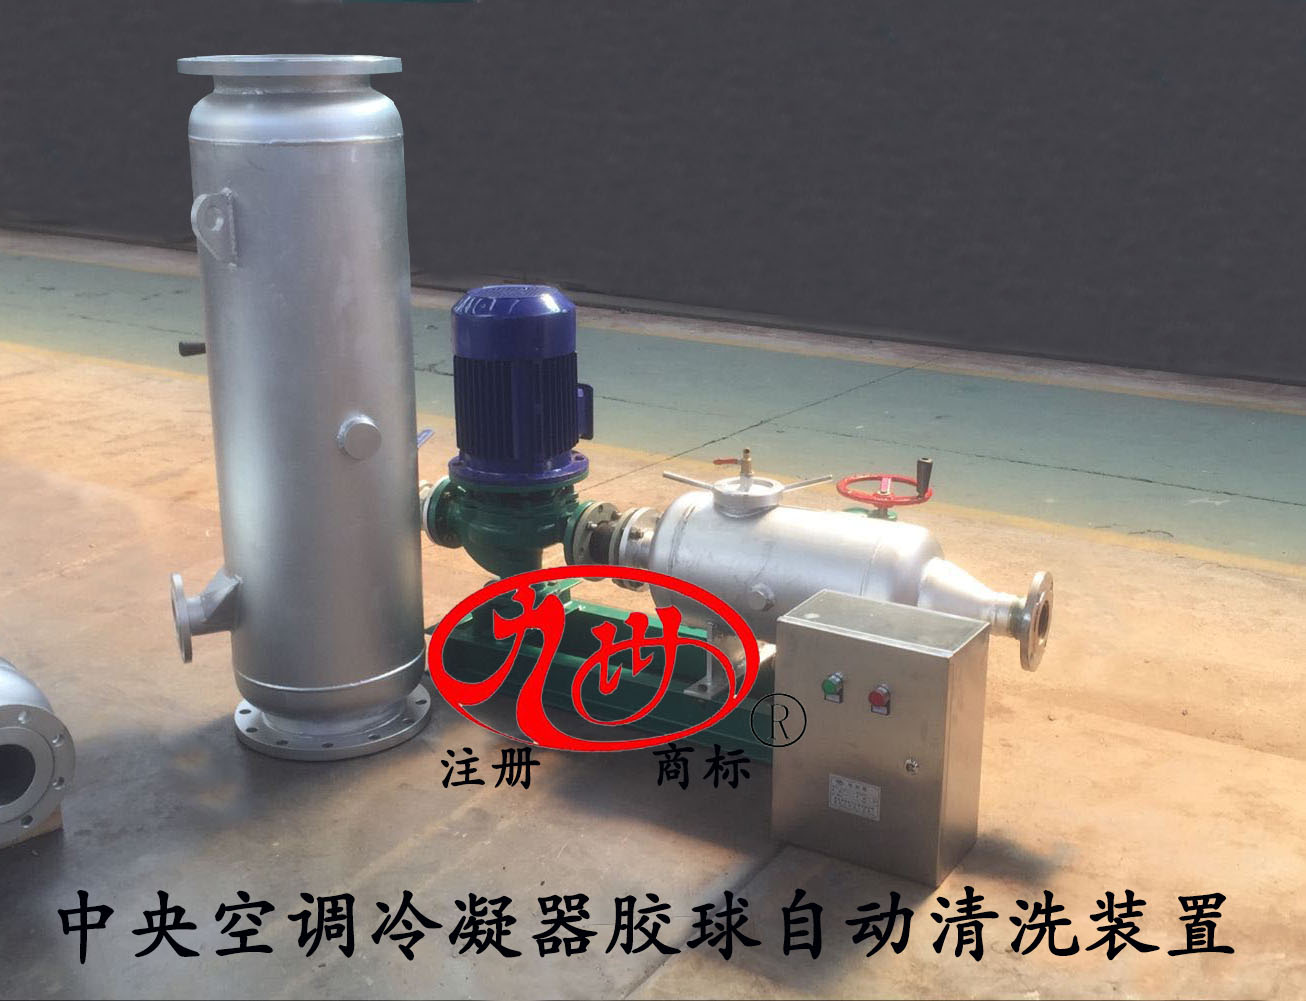 中央空调胶球泵在清洗系统中的作用